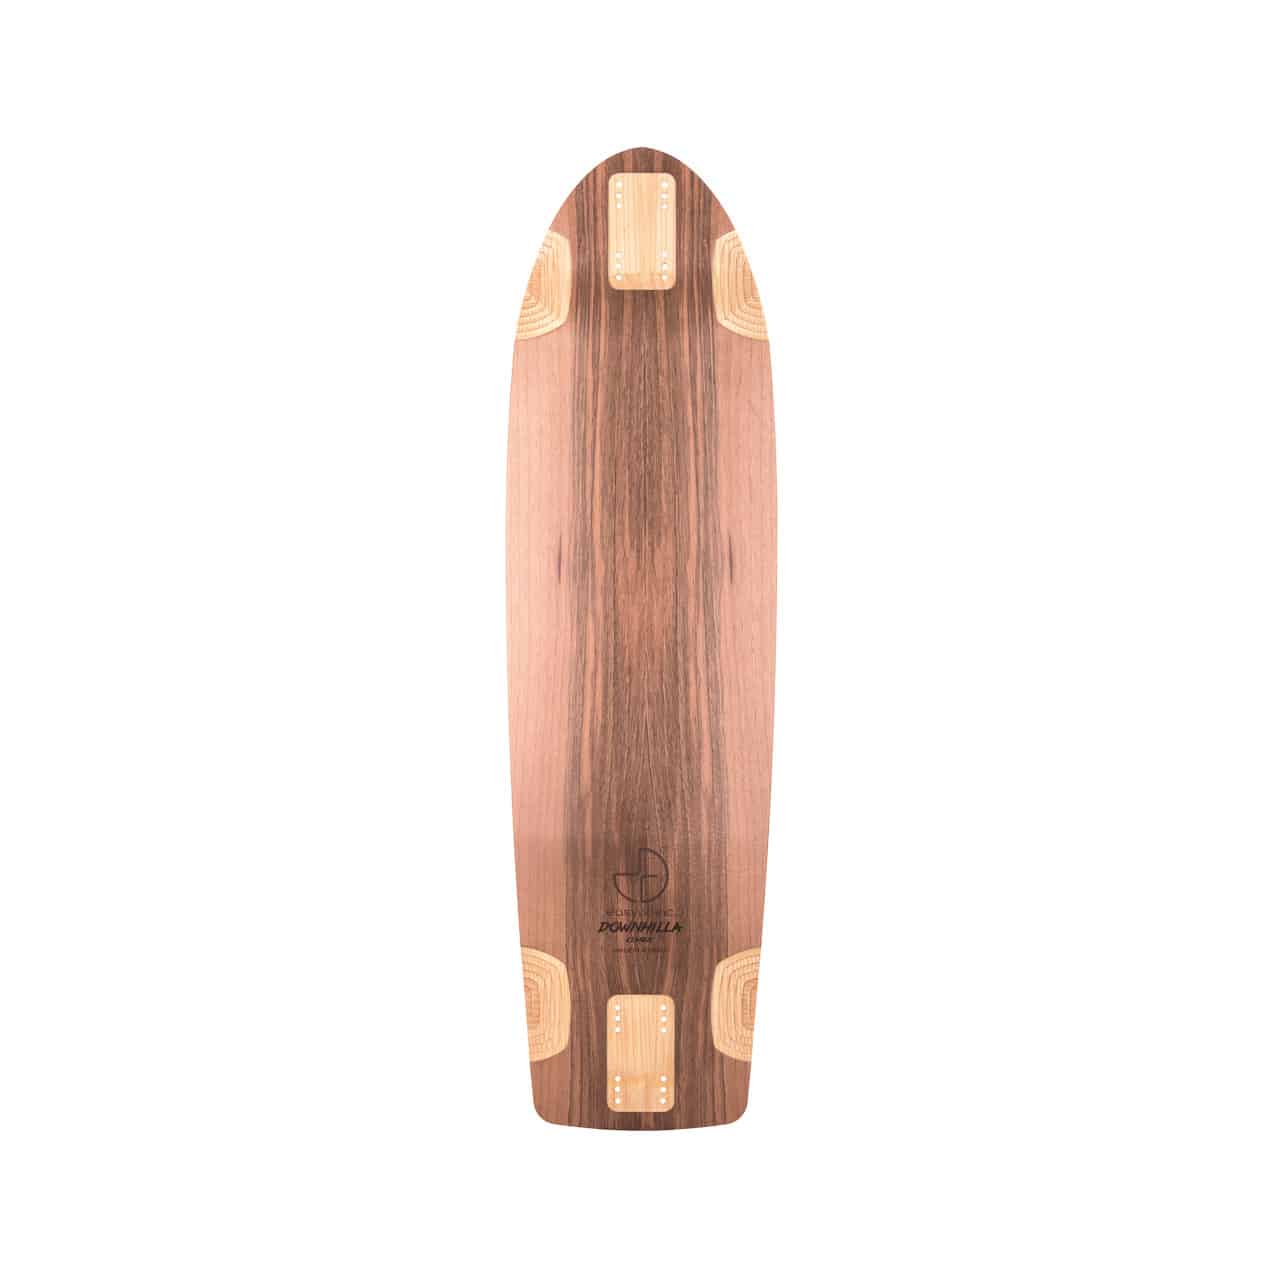 DOWNHILLA-CLASSIC-Longboard-Deck_Longboards-Skateboards_40907_2.jpeg